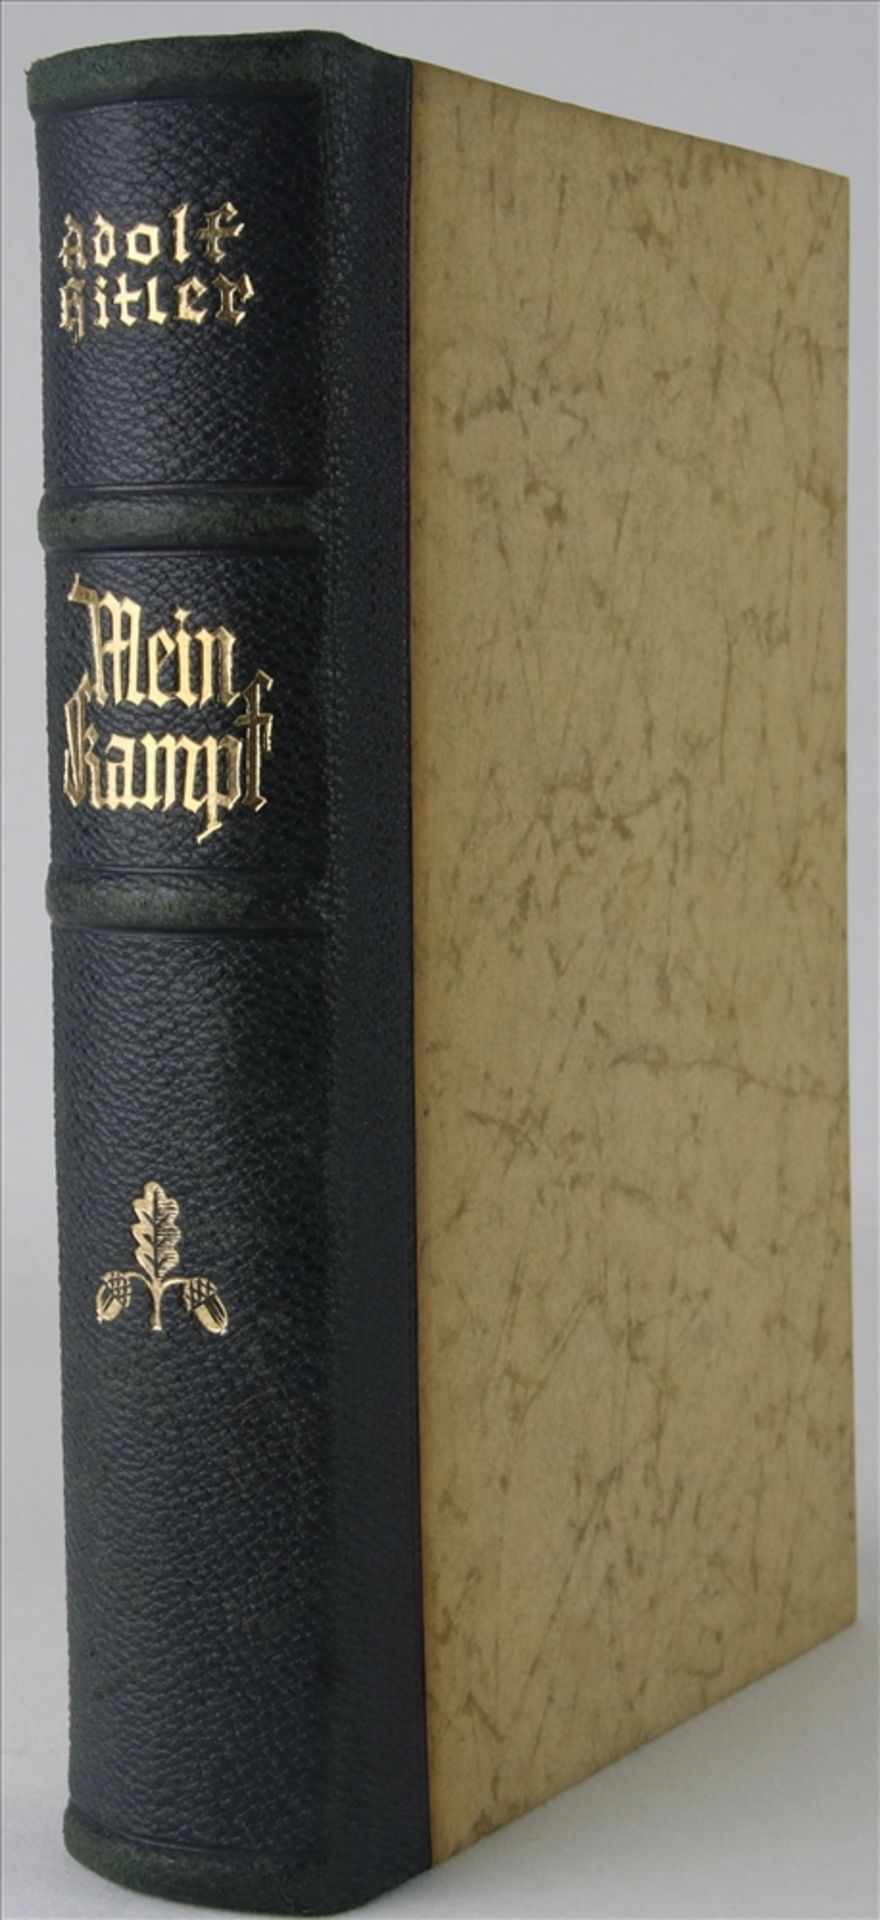 Adolf Hitler Mein Kampf. Hochzeitsausgabe. Eher Verlag 1937. MIt Widmung auf Vorsatz.